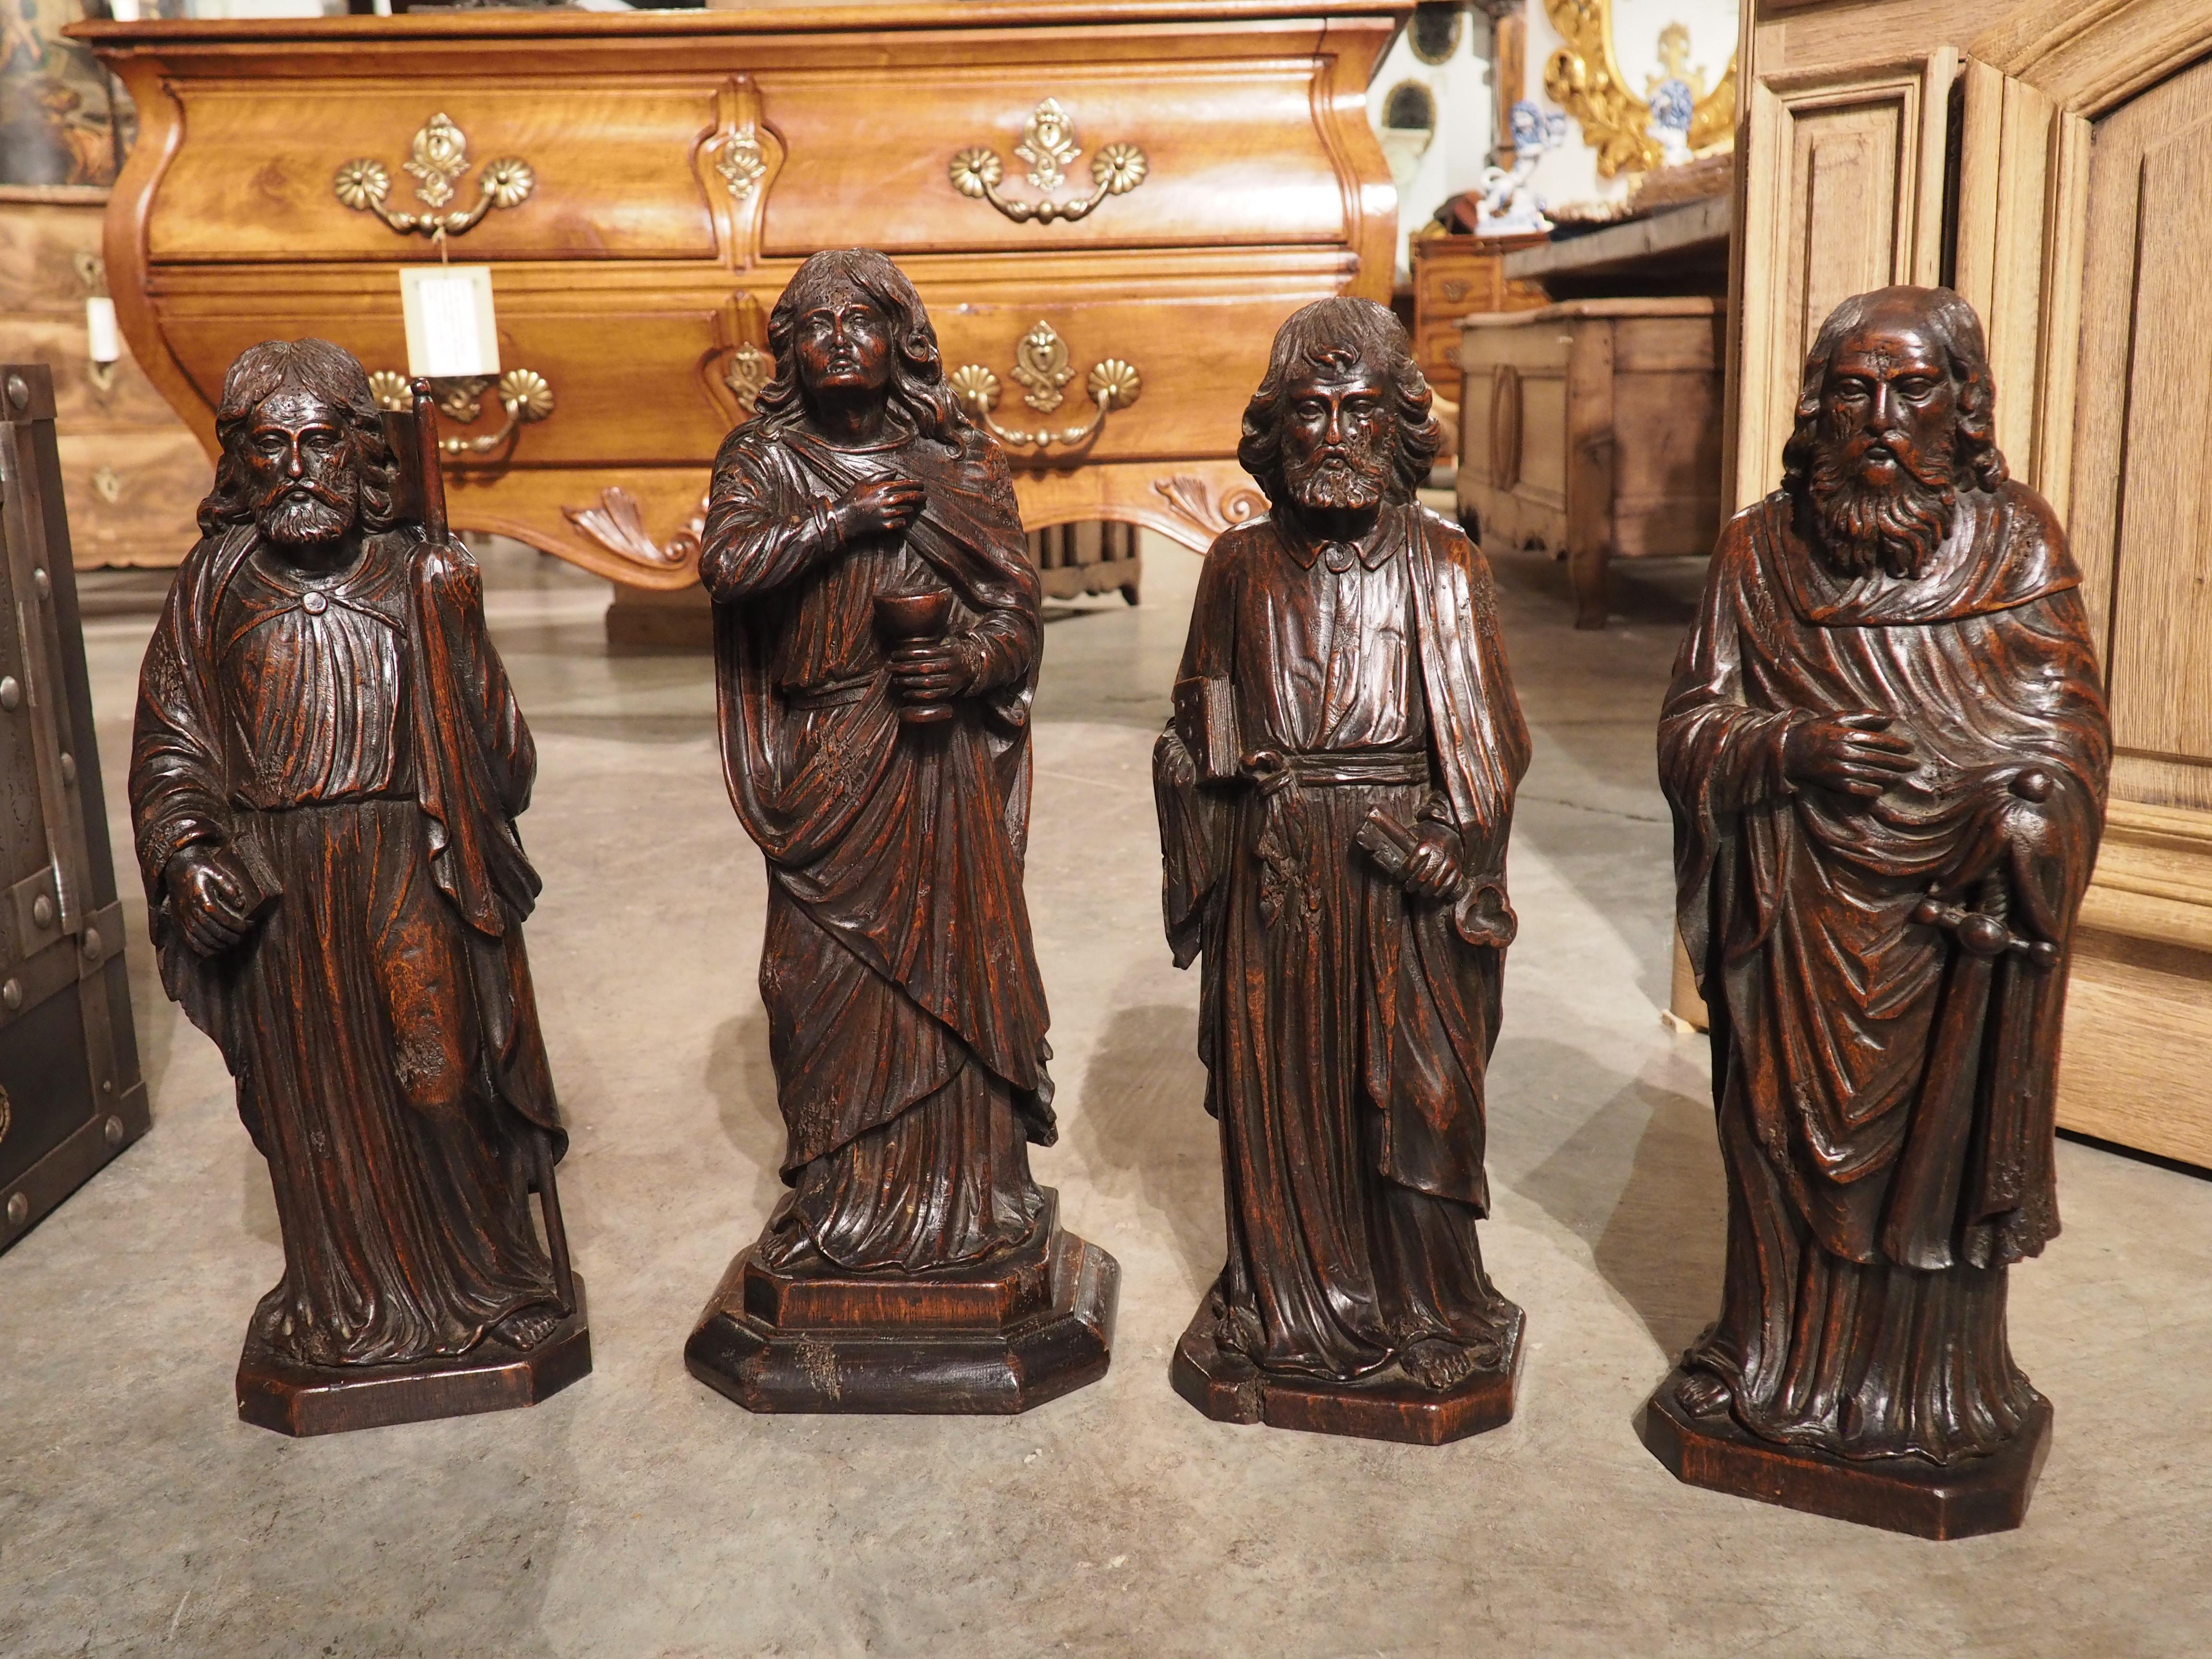 Sculptés à la main dans du chêne, vers 1800, ces sculptures représentent sans doute les apôtres les plus importants : Jacques, Jean, Pierre et Paul. Toutes les figures sont nettement différentes, bien qu'elles partagent certains points communs,